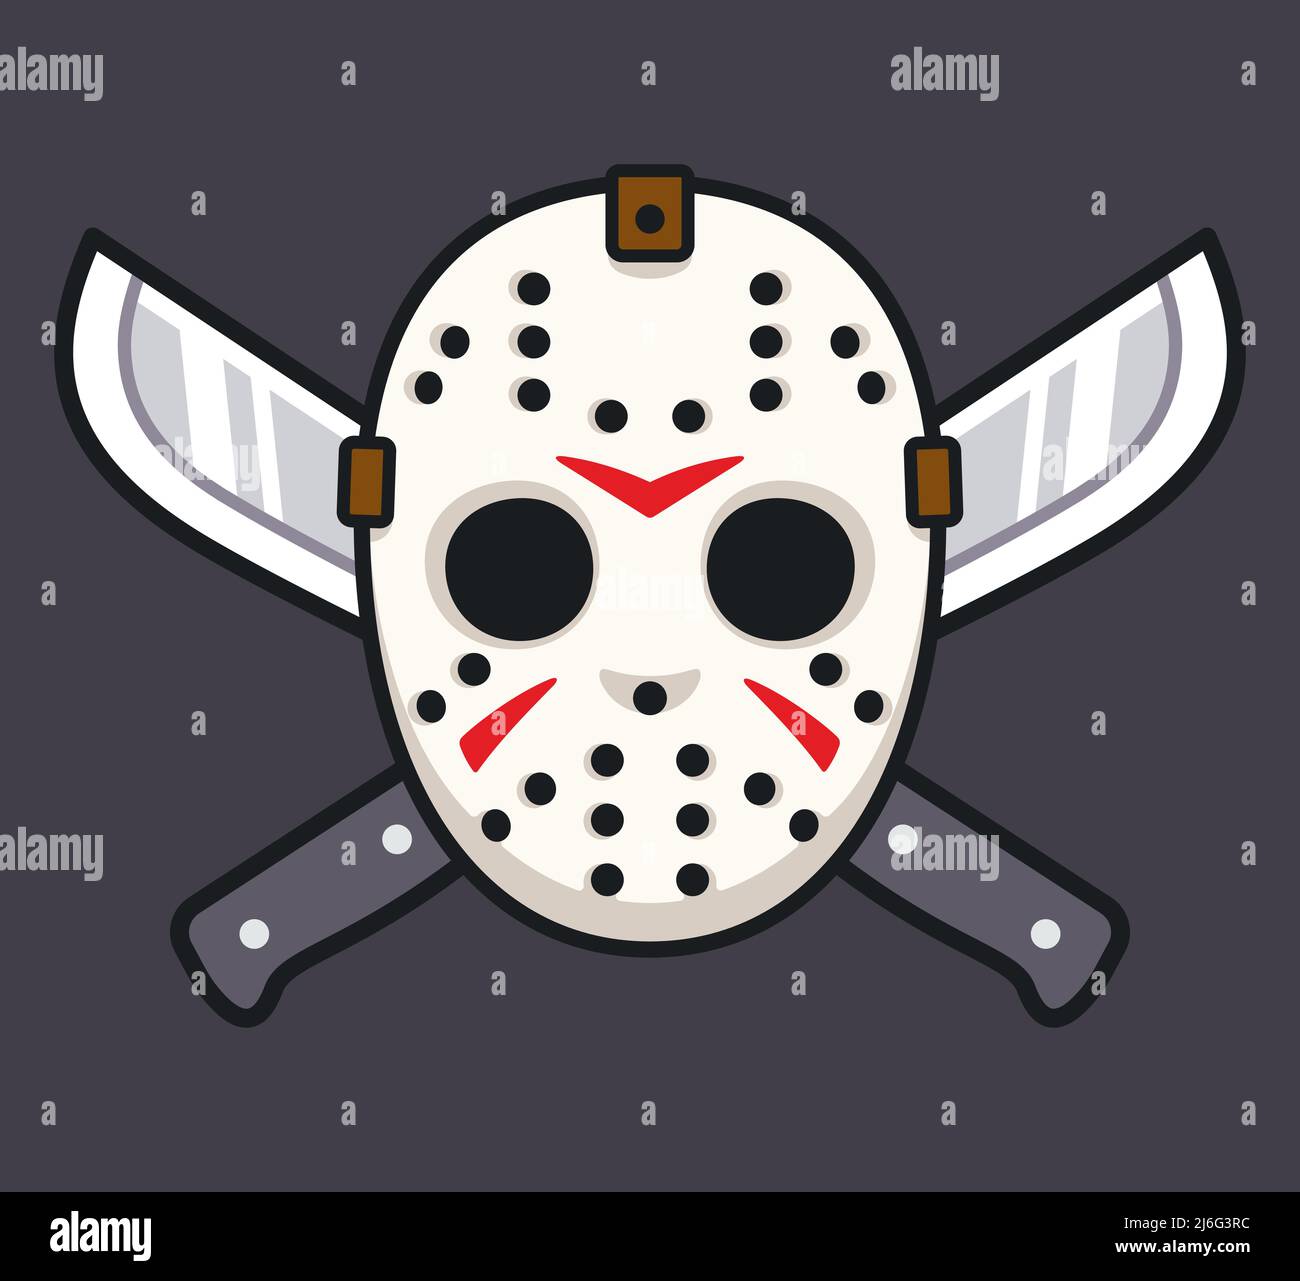 Serie asesino máscara de hockey con dos machetes, Halloween o viernes 13 horror dibujo. Ilustración de vectores de dibujos animados. Ilustración del Vector